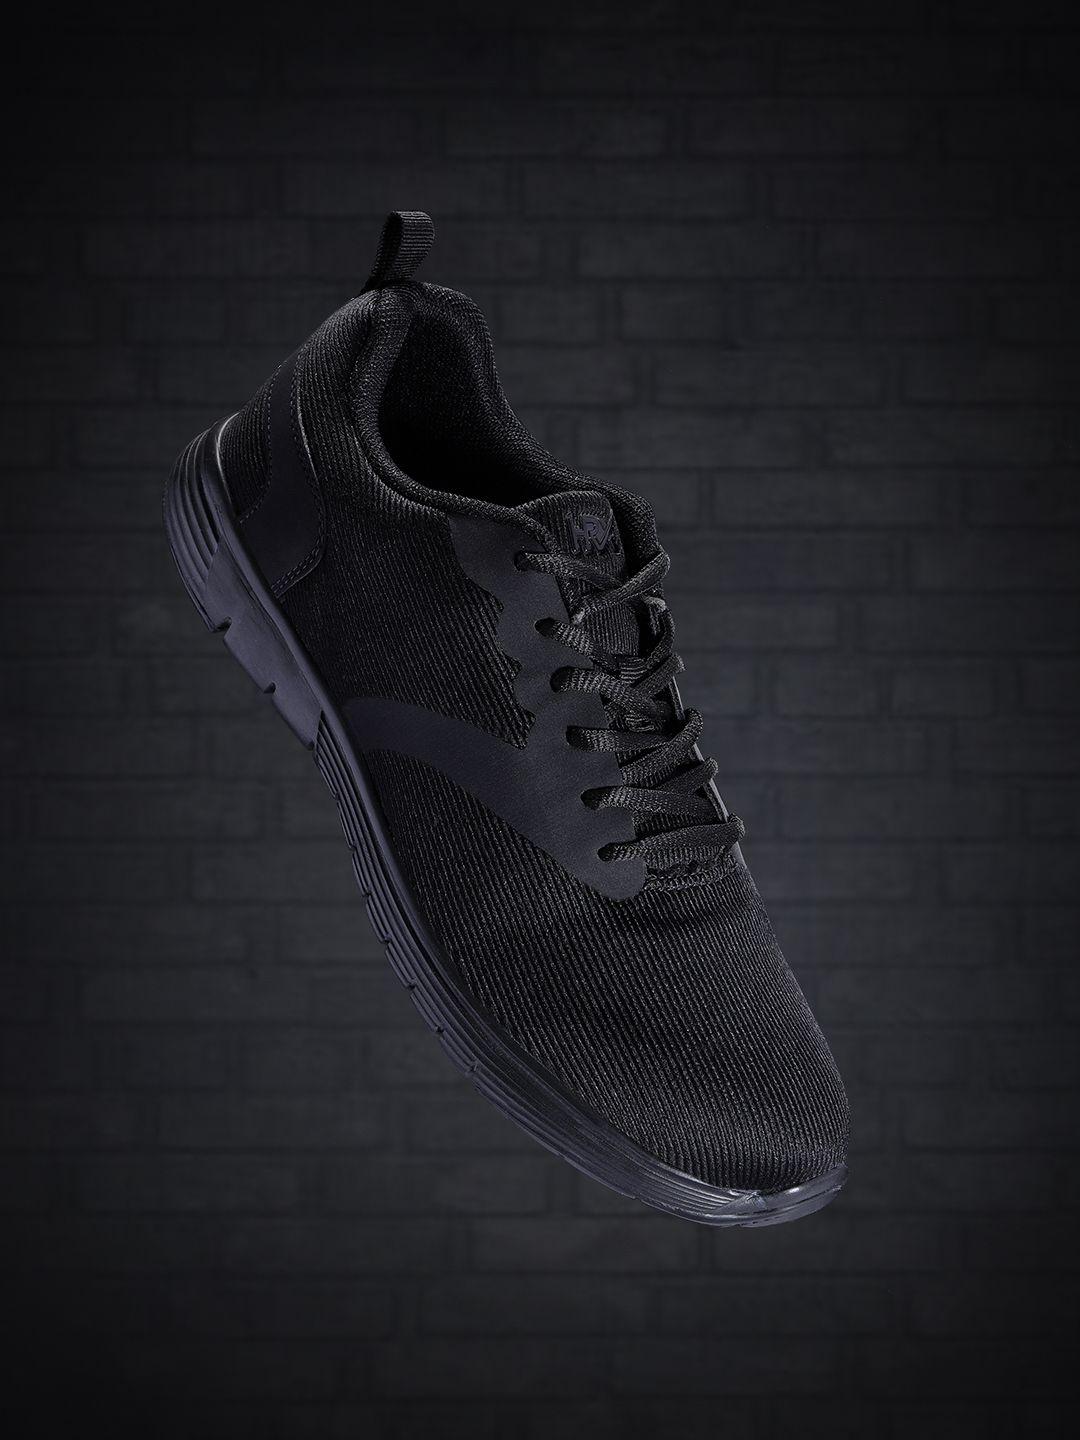 hrx by hrithik roshan men black woven design runner shoes